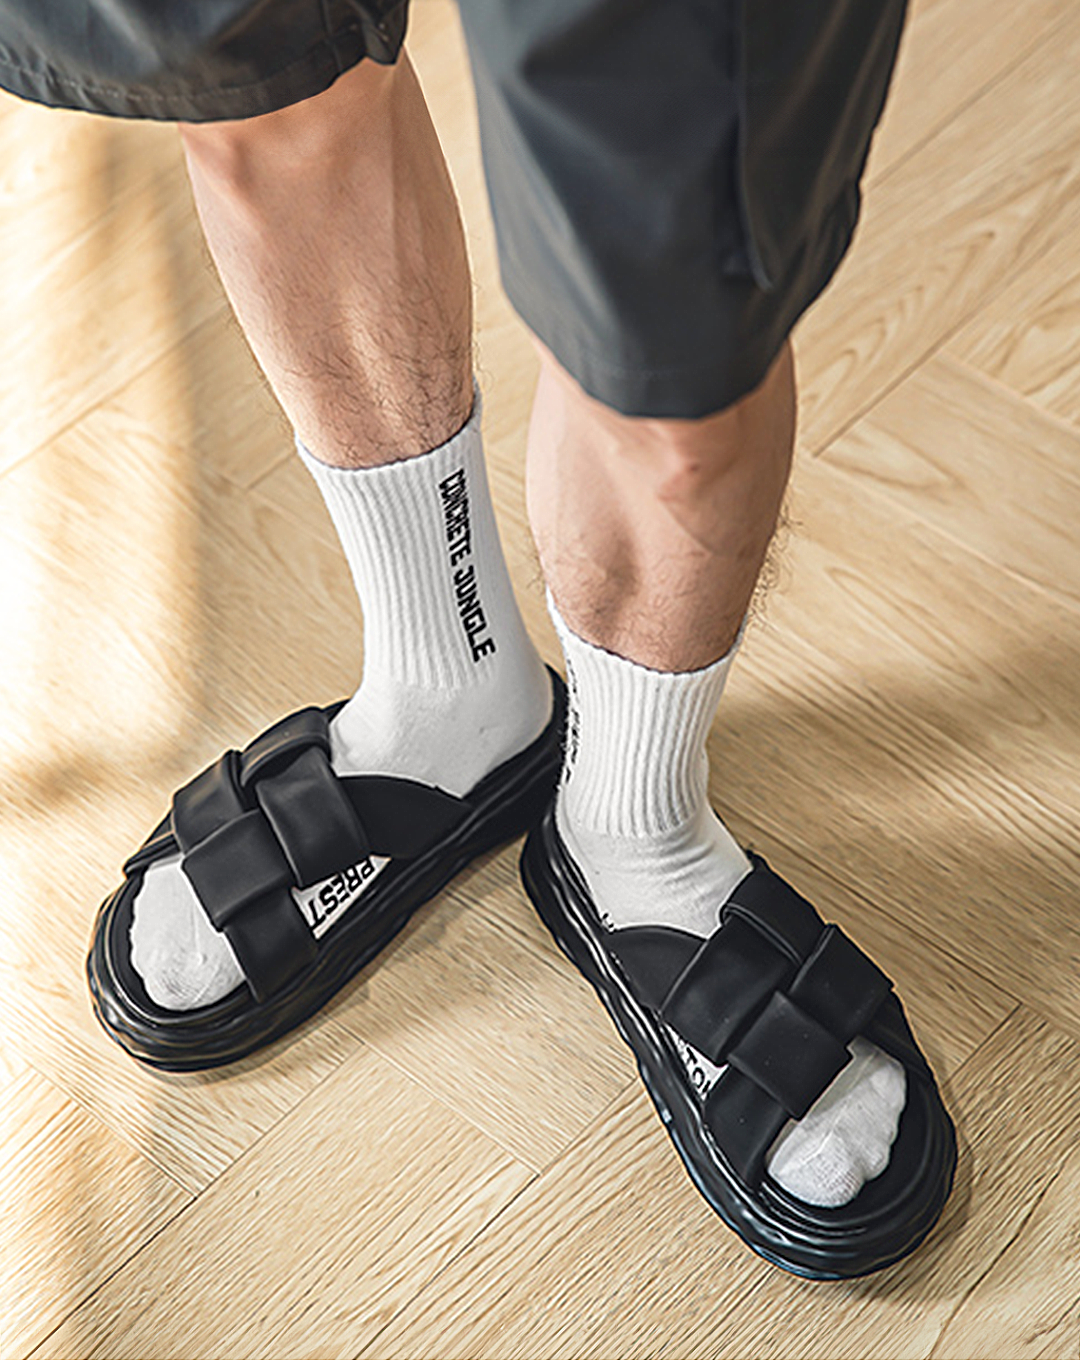 ♂Braided Platform Sandals